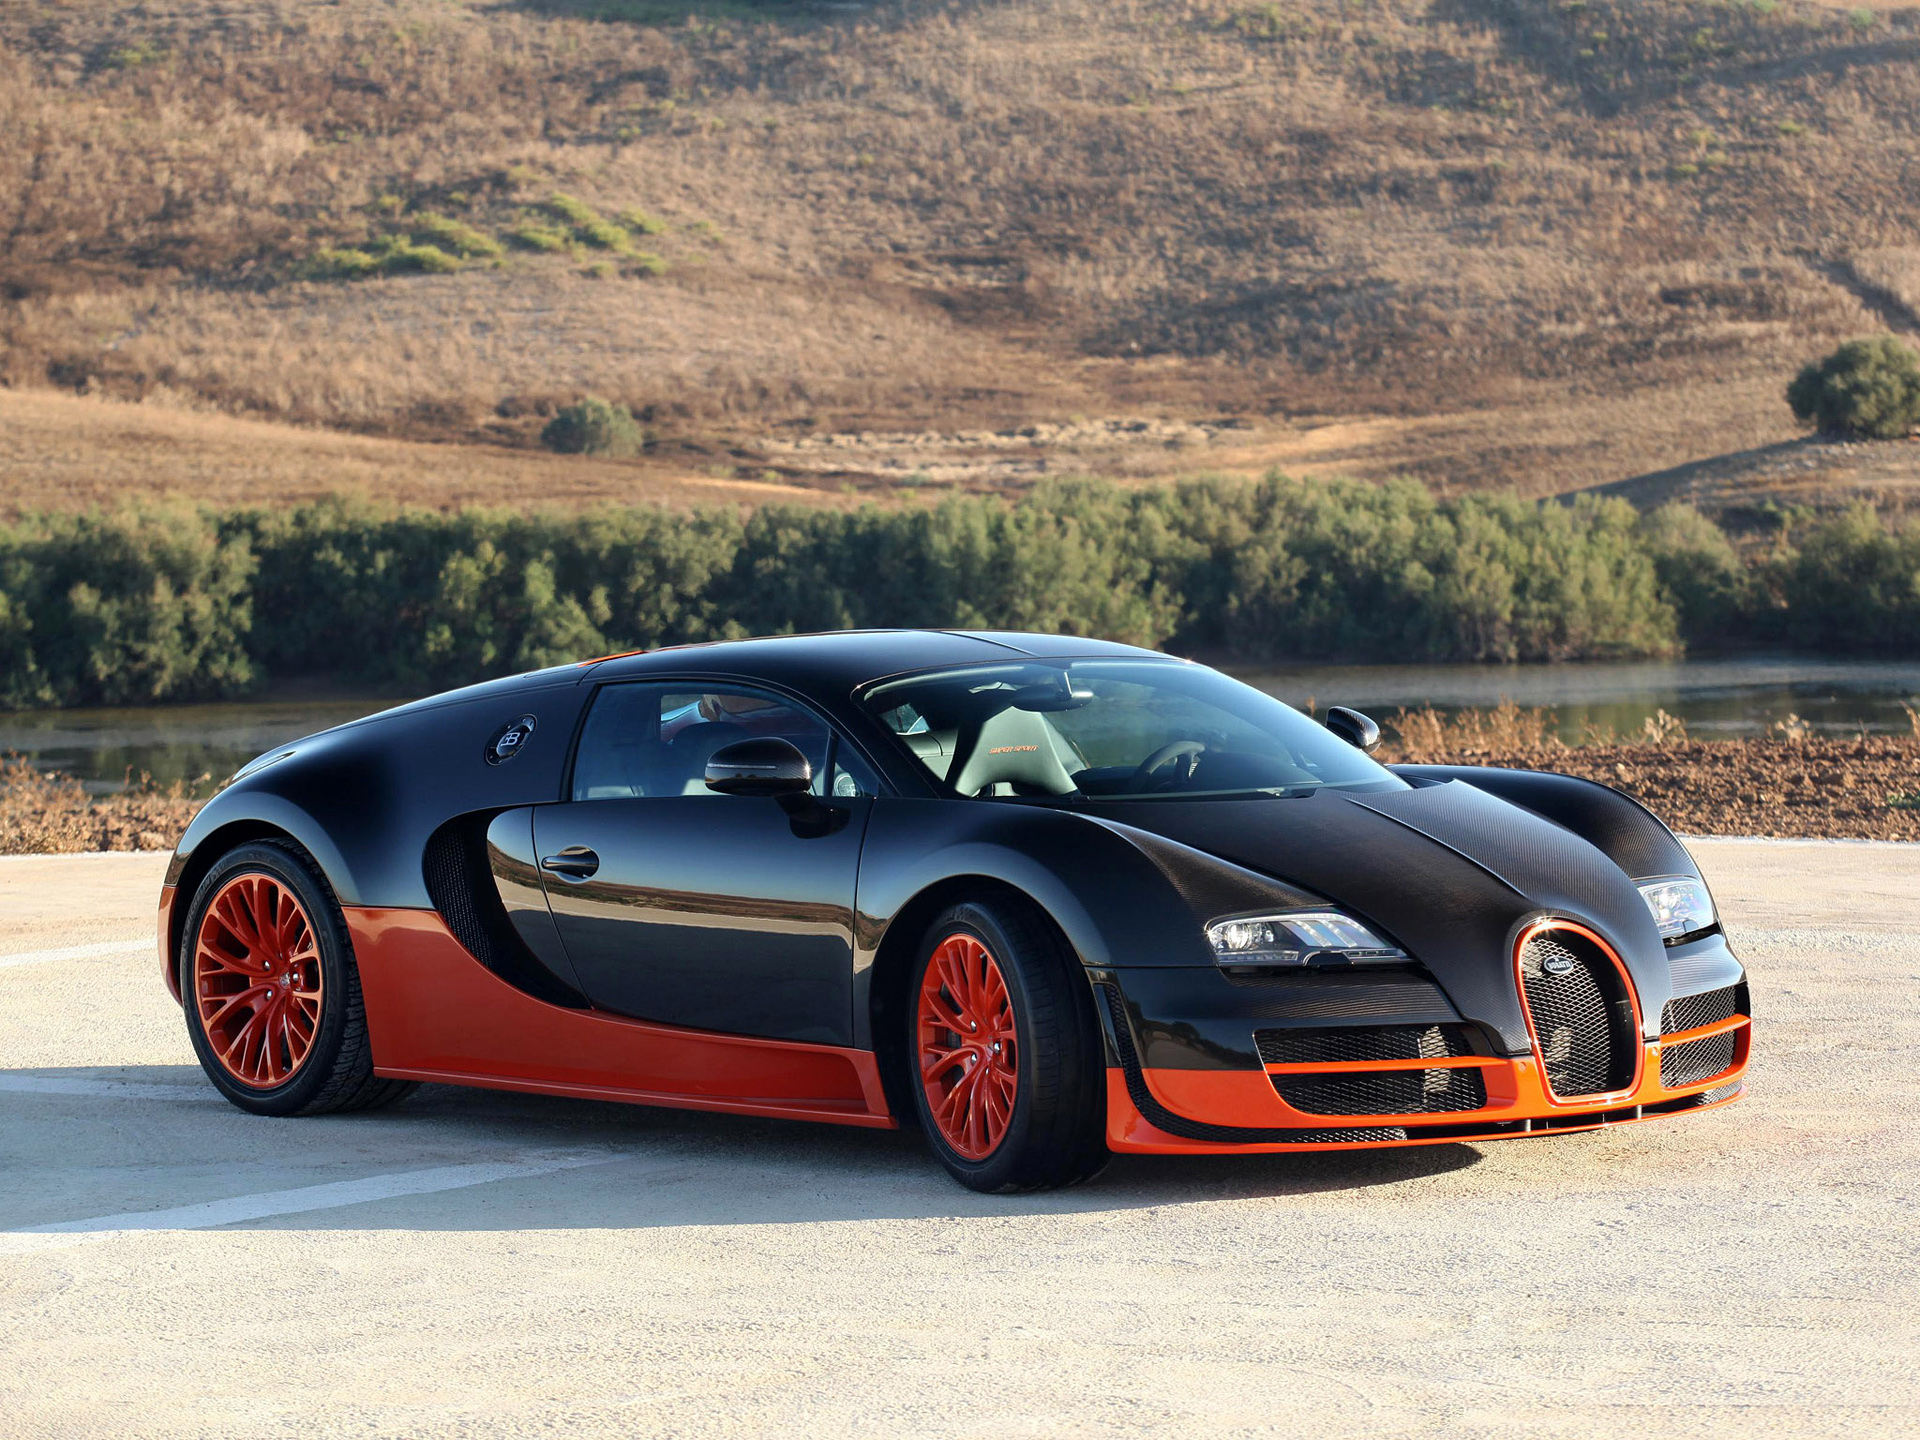 Скачать обои Bugatti Veyron 16 4 Supersport на телефон бесплатно